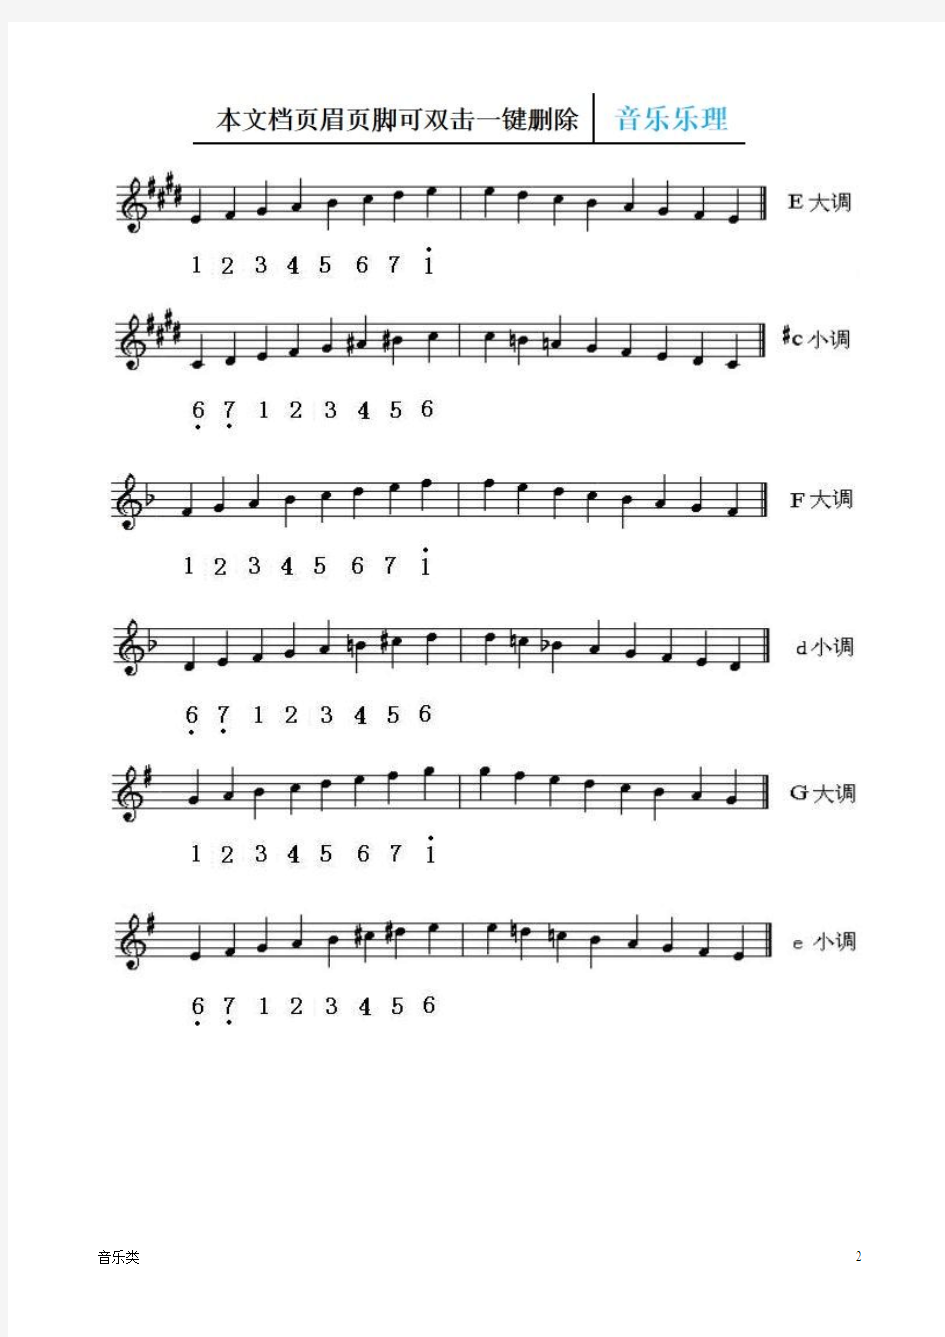 【音乐】各调五线谱简谱对照简图